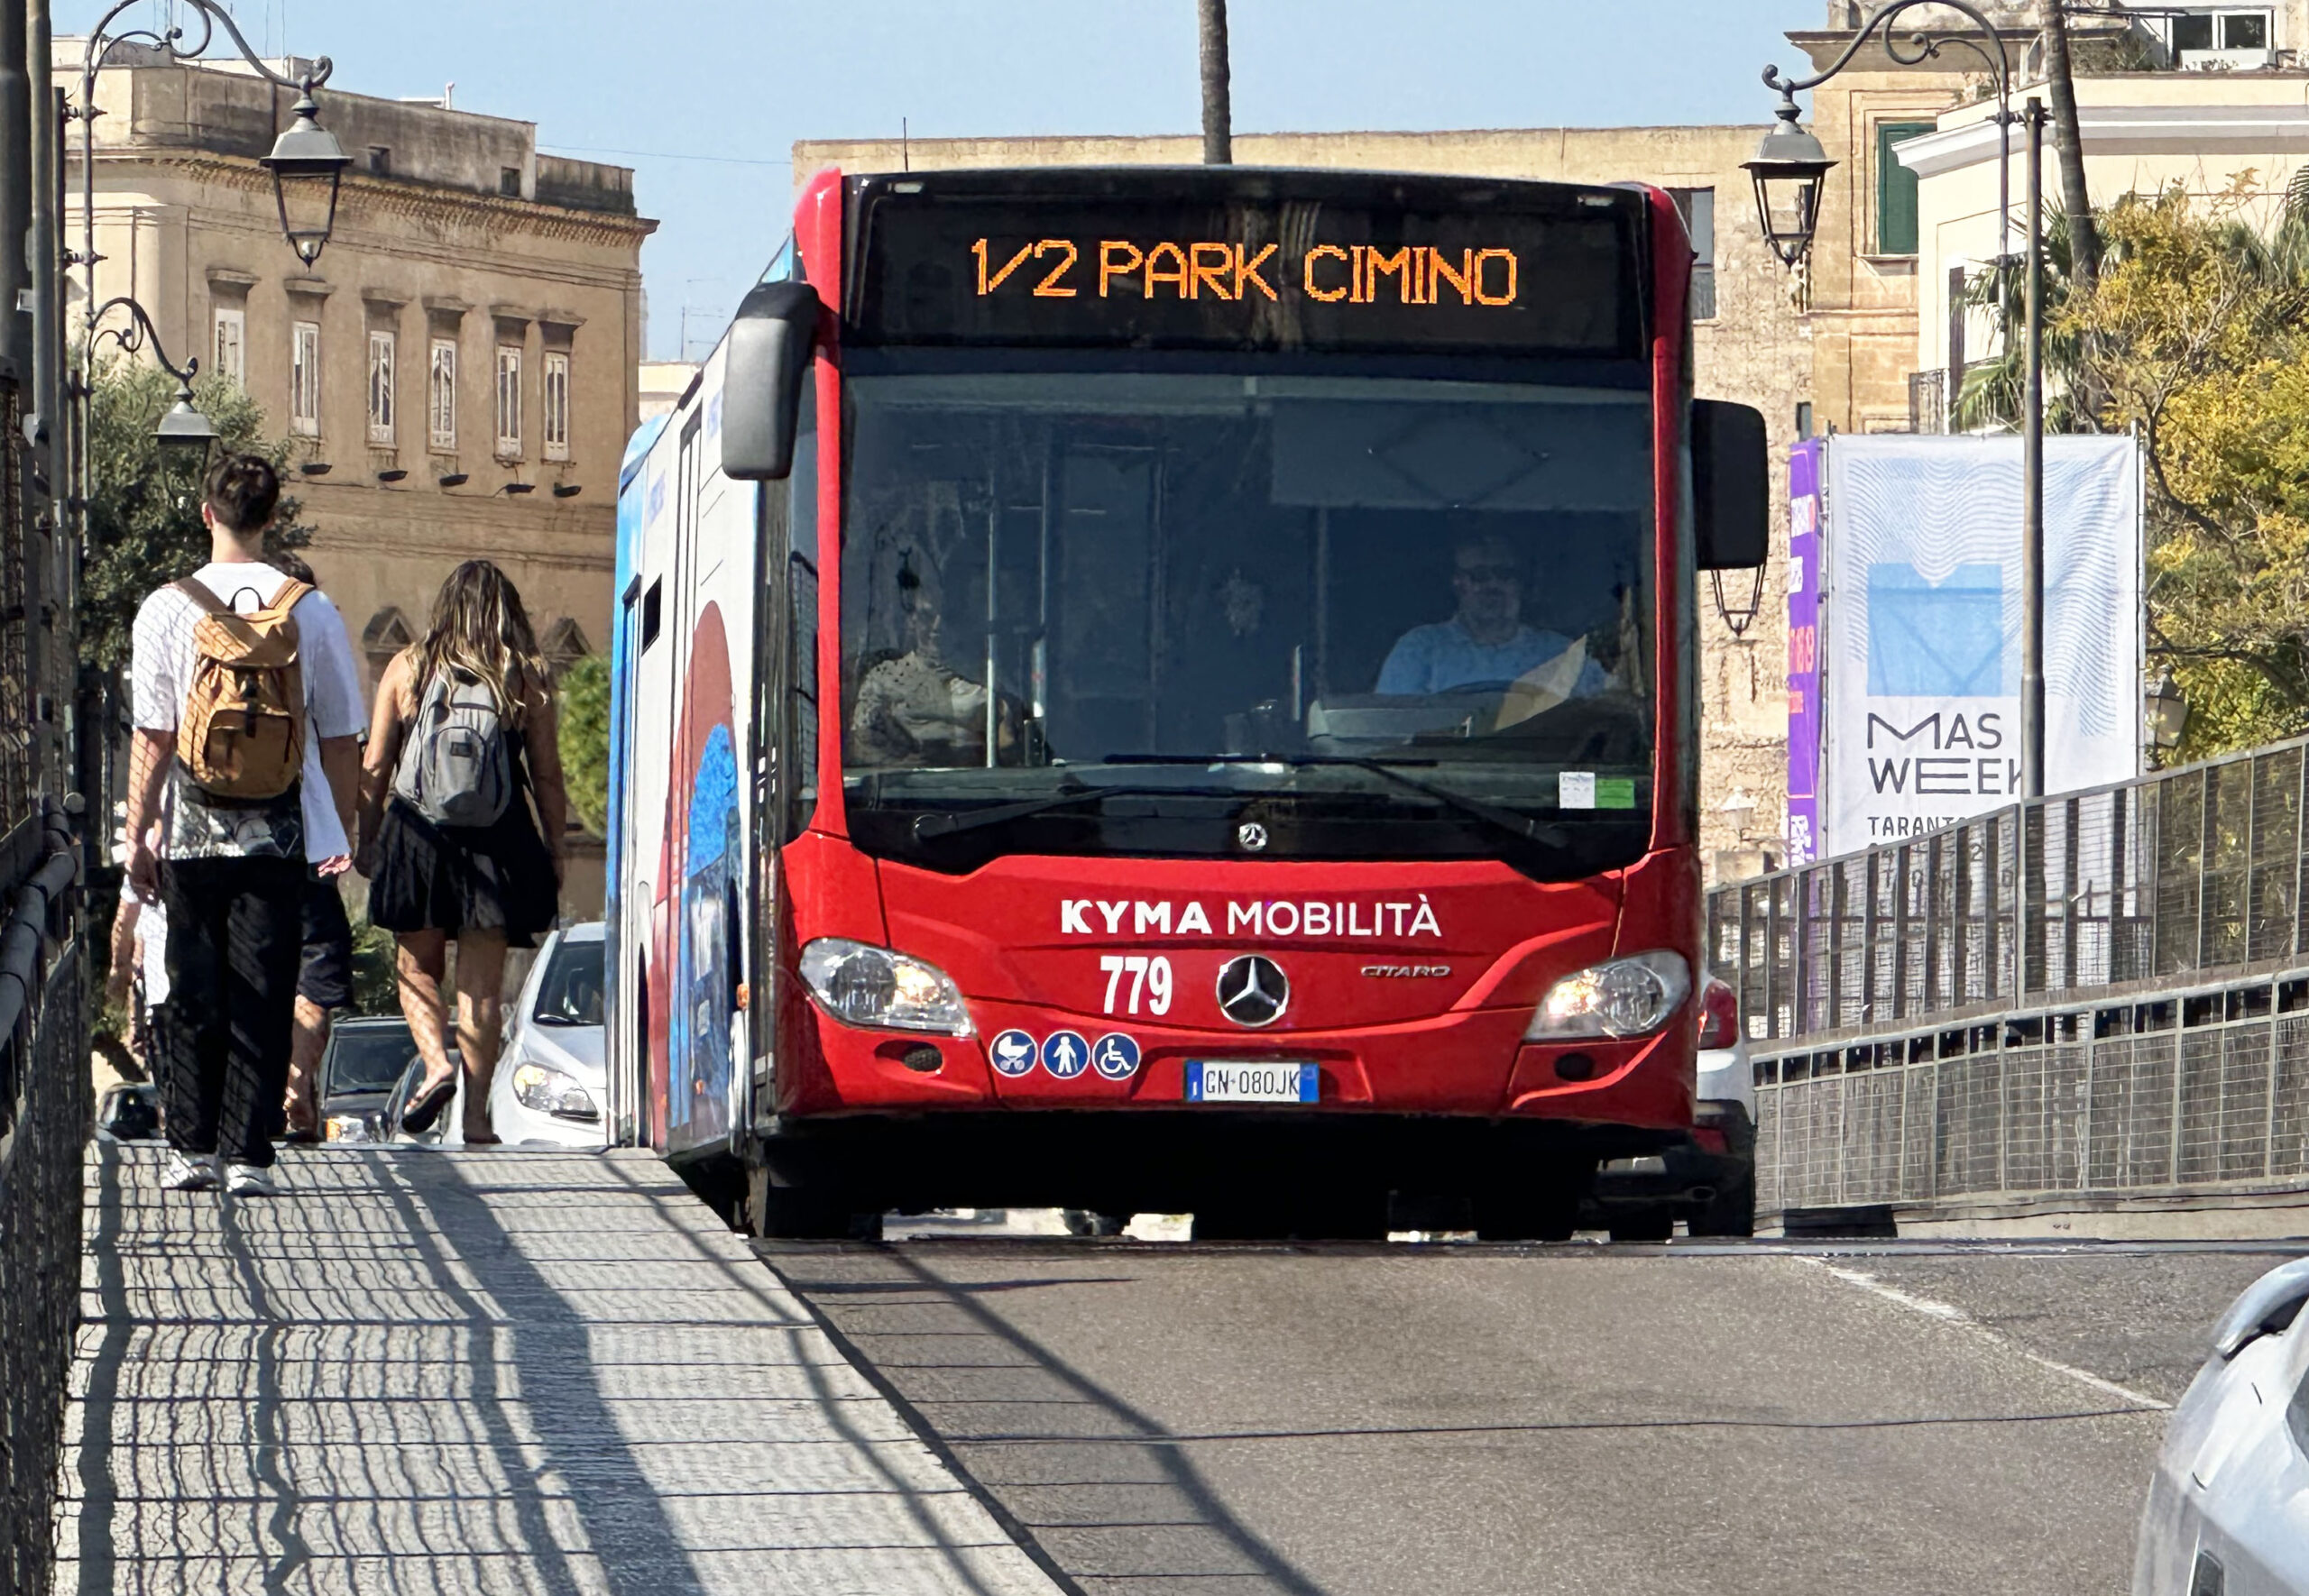 Variazioni linee autobus Kyma Mobilità per la StraTaranto